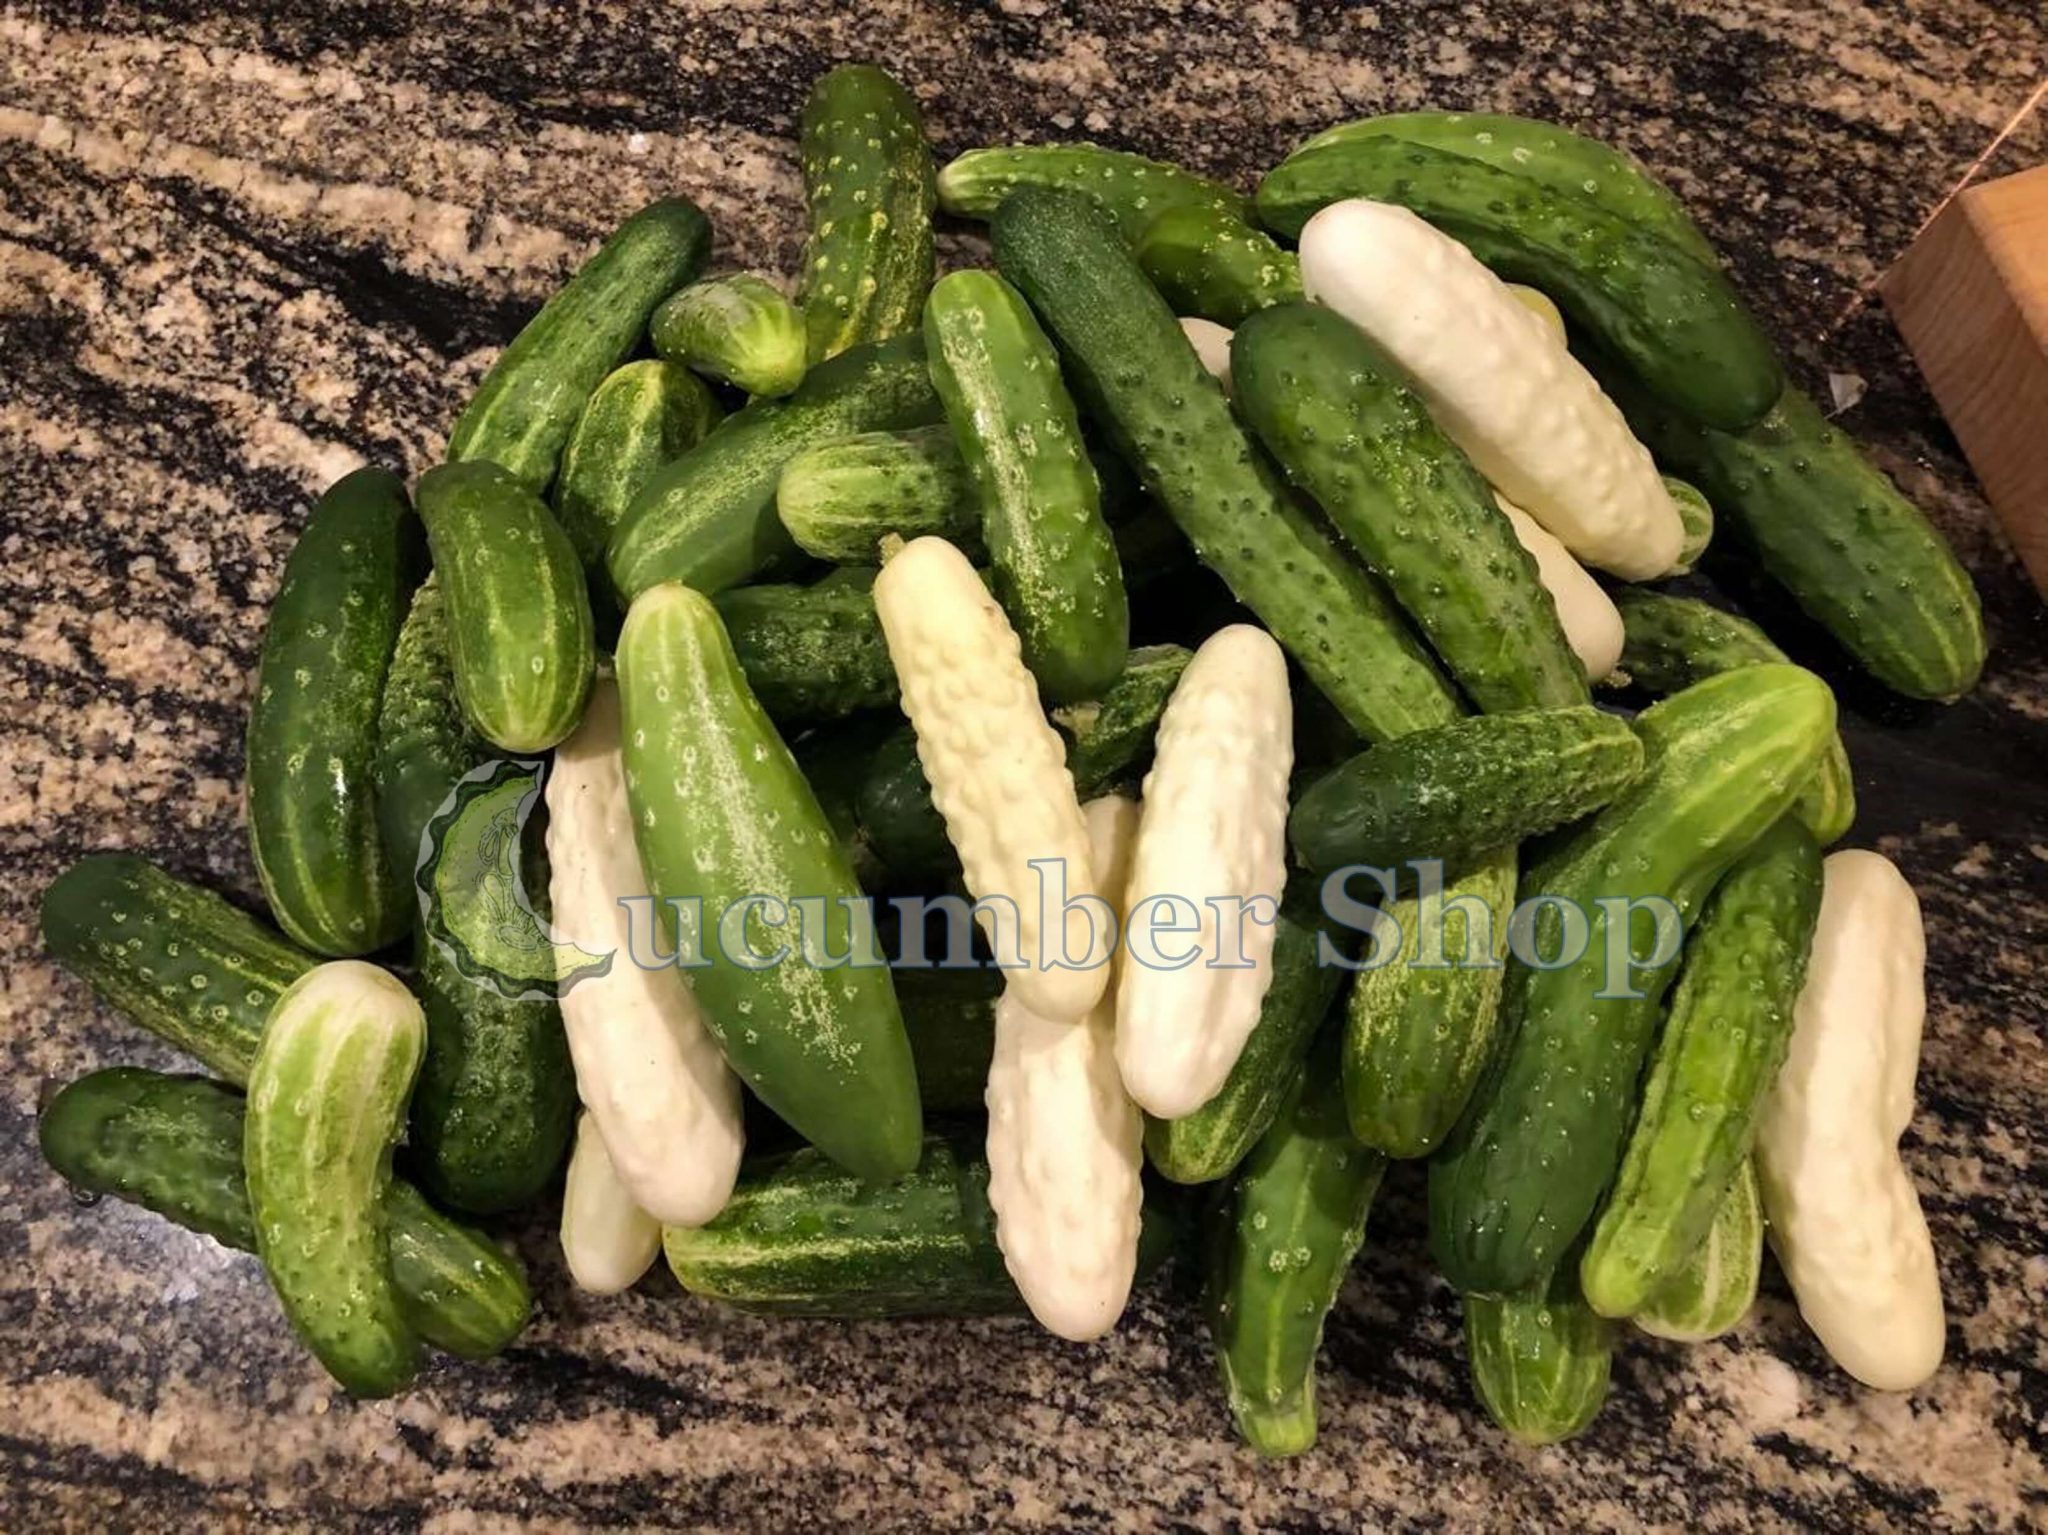 Silver Slicer Cucumber – Cucumber Shop